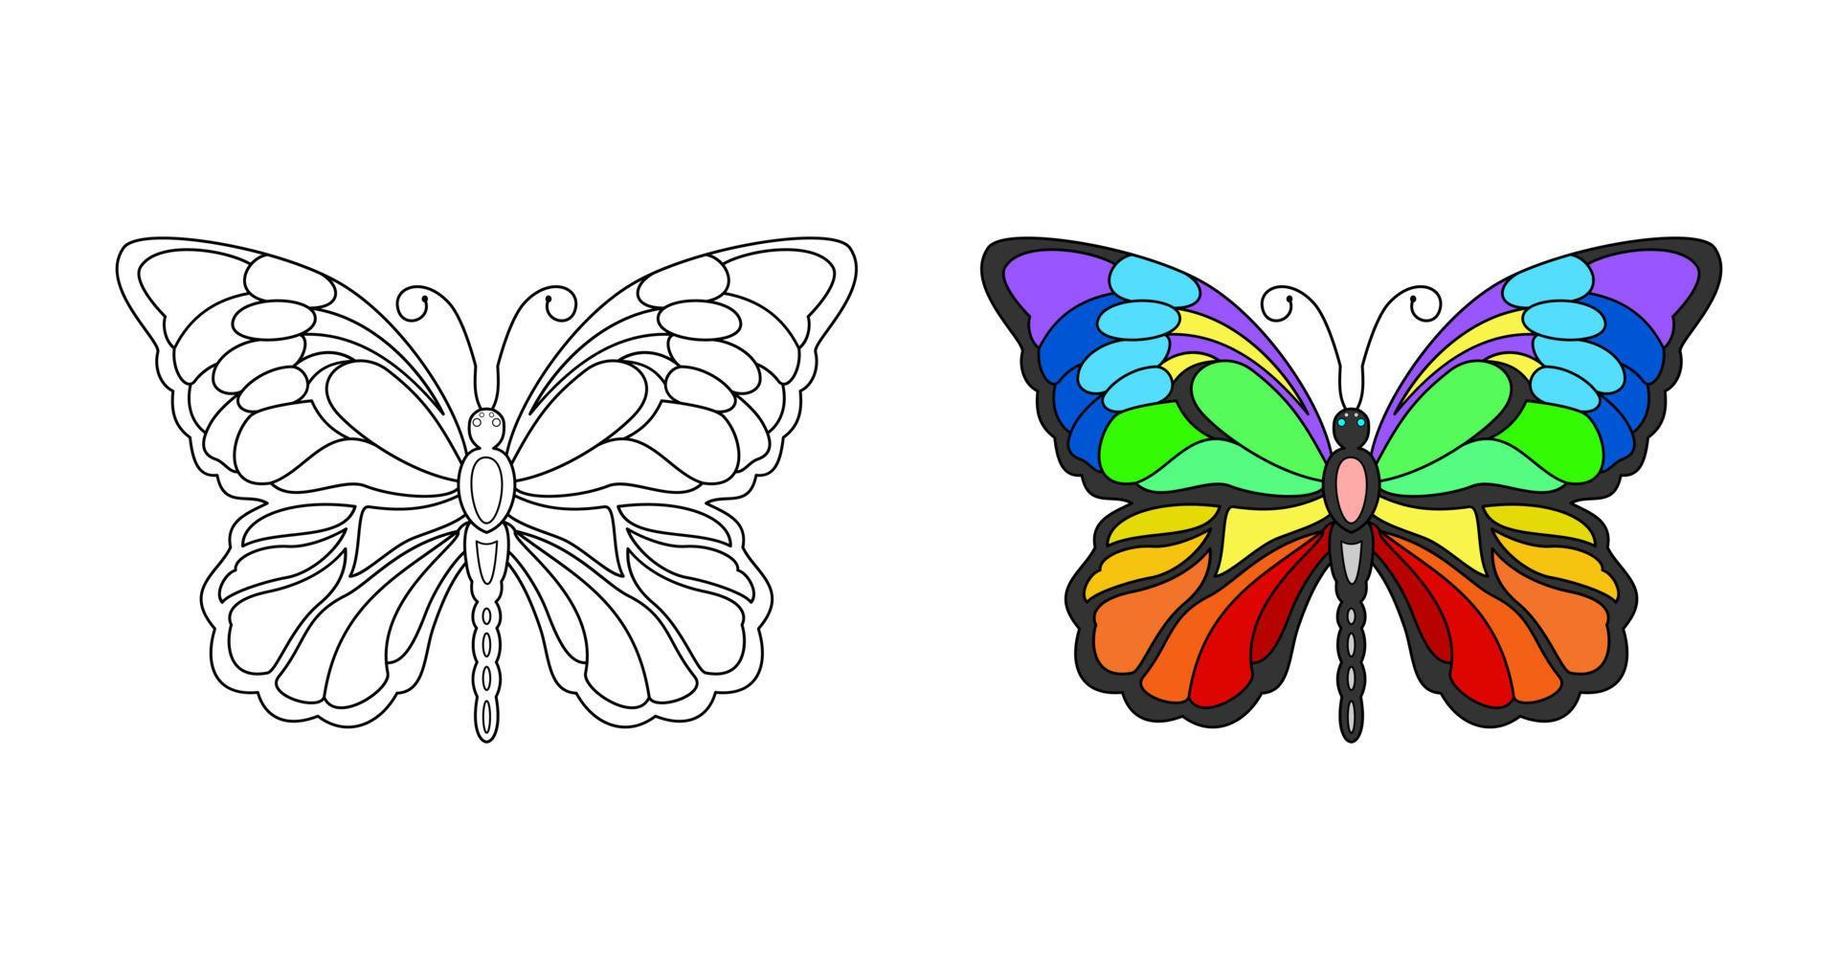 vetor de borboleta, livro de colorir ou página para crianças, ilustração vetorial.